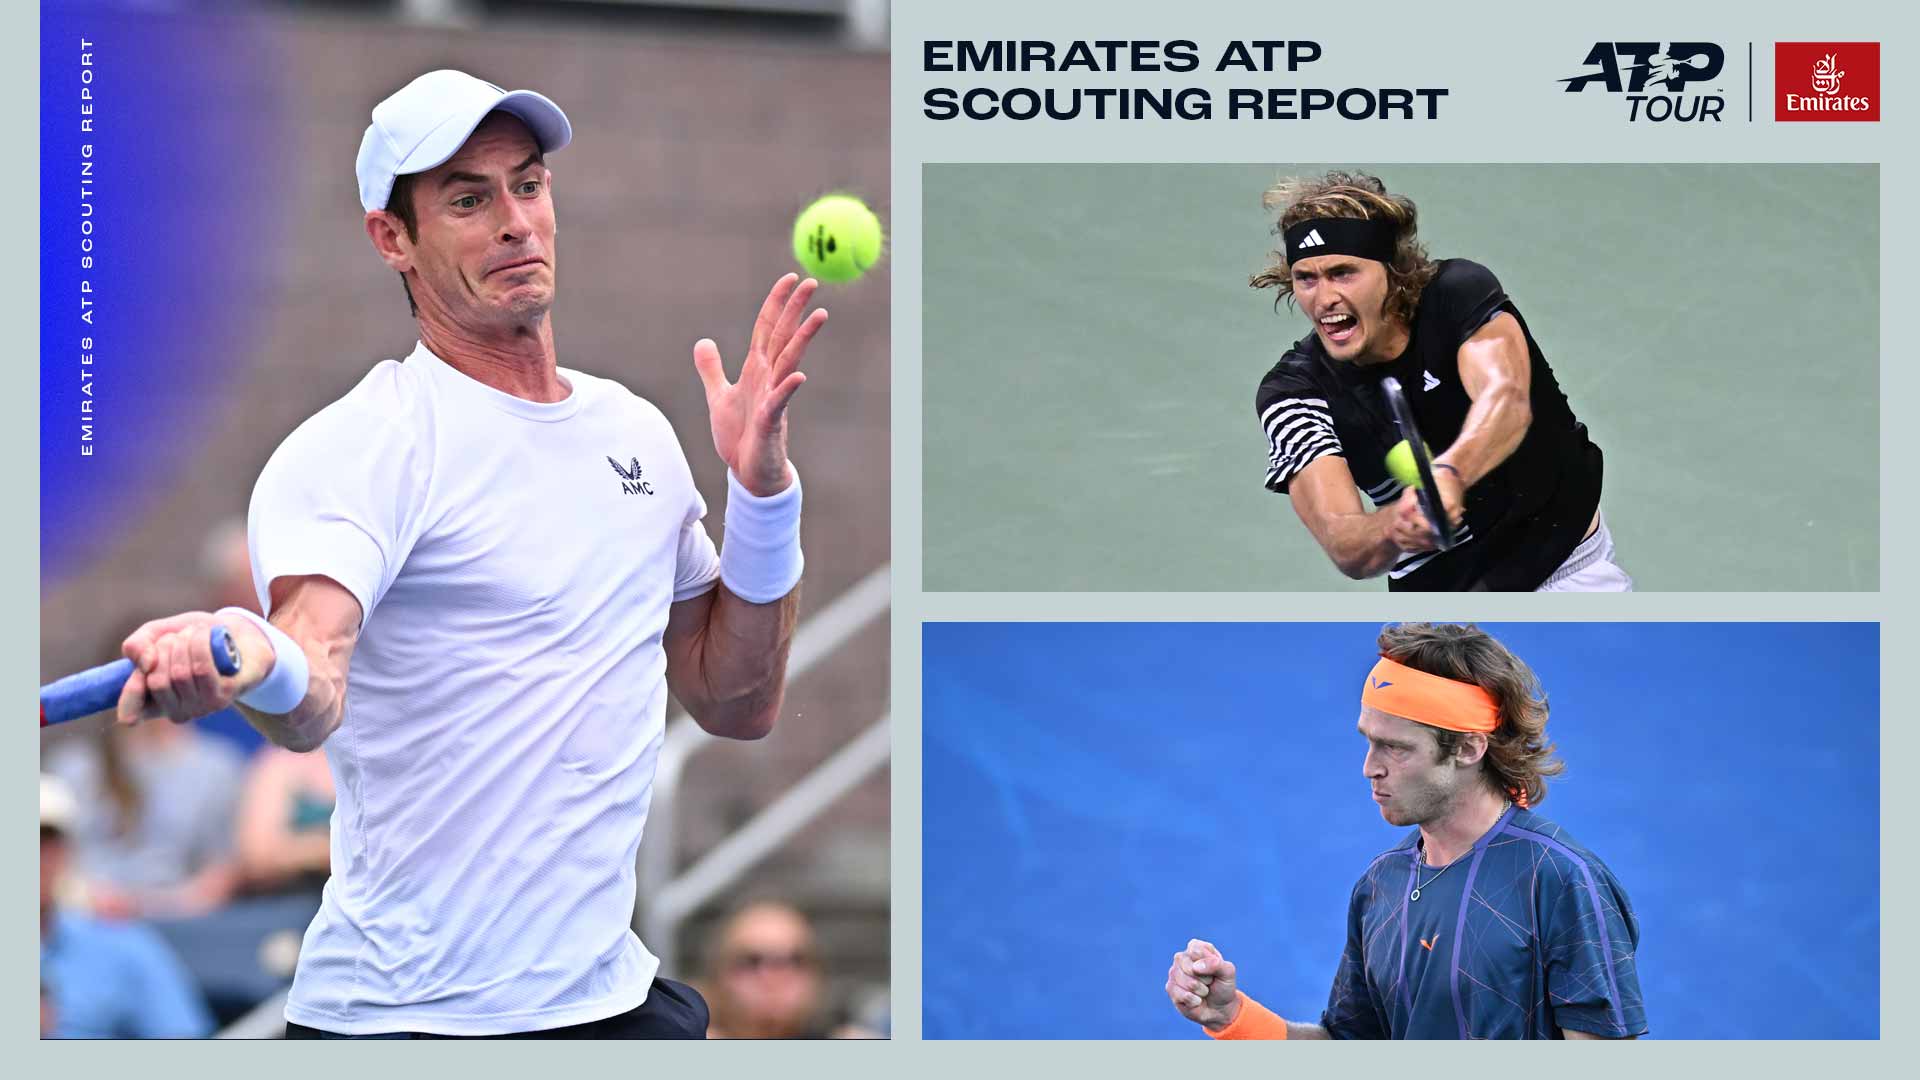 Emirates ATP Scouting Report